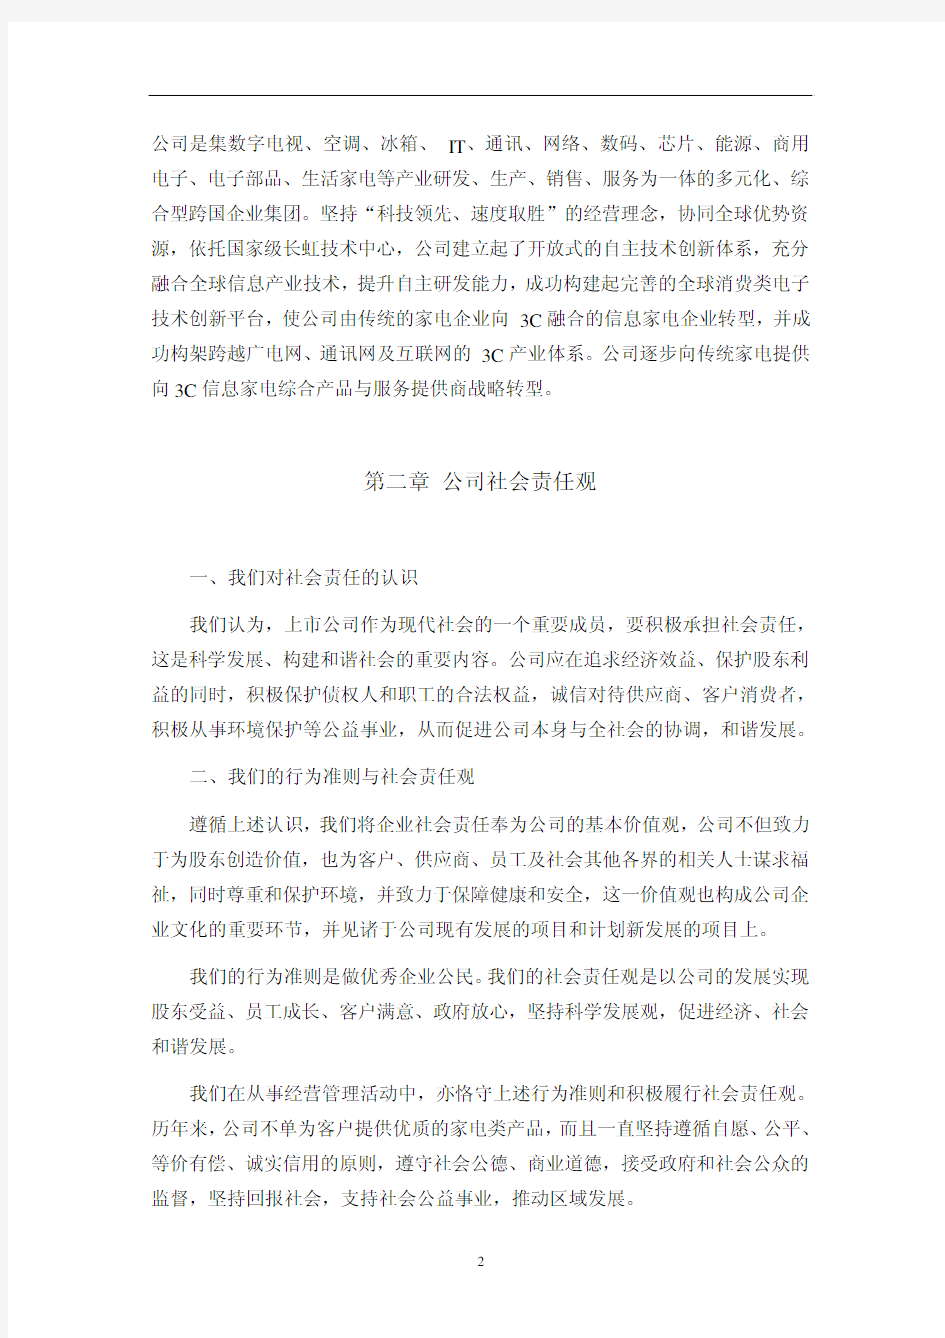 四川长虹电器股份有限公司2010年度社会责任报告 - 企业社会责任